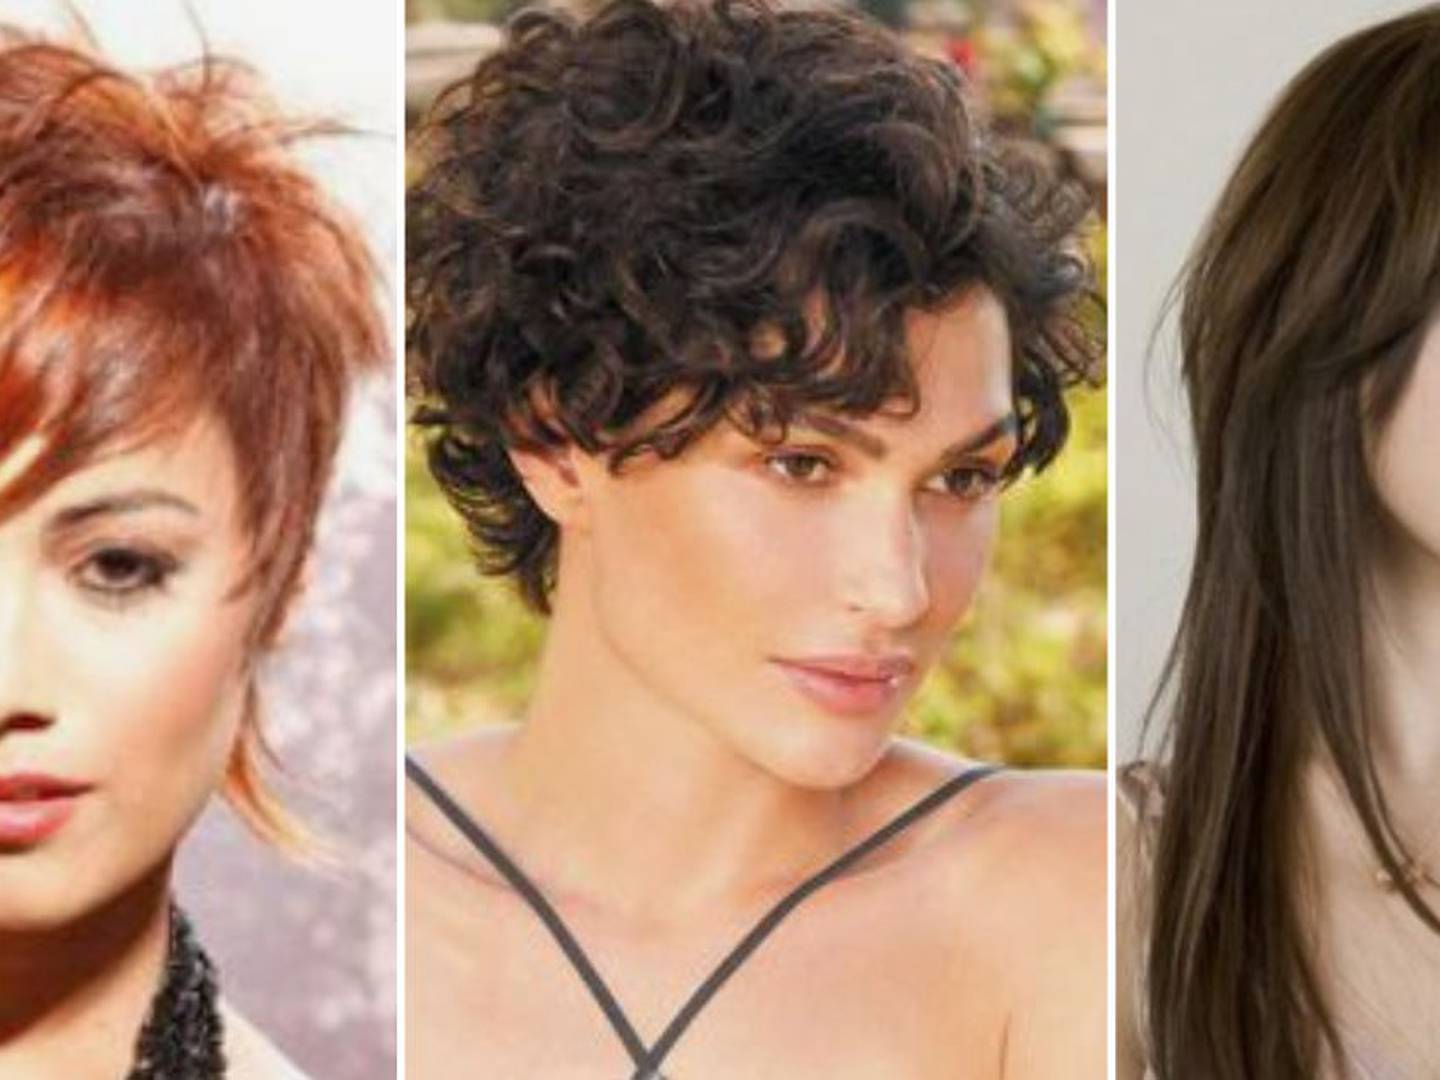 Cortes de cabello para perfilar el rostro: los estilos ideales para mujeres  de 30 años – Publimetro Chile